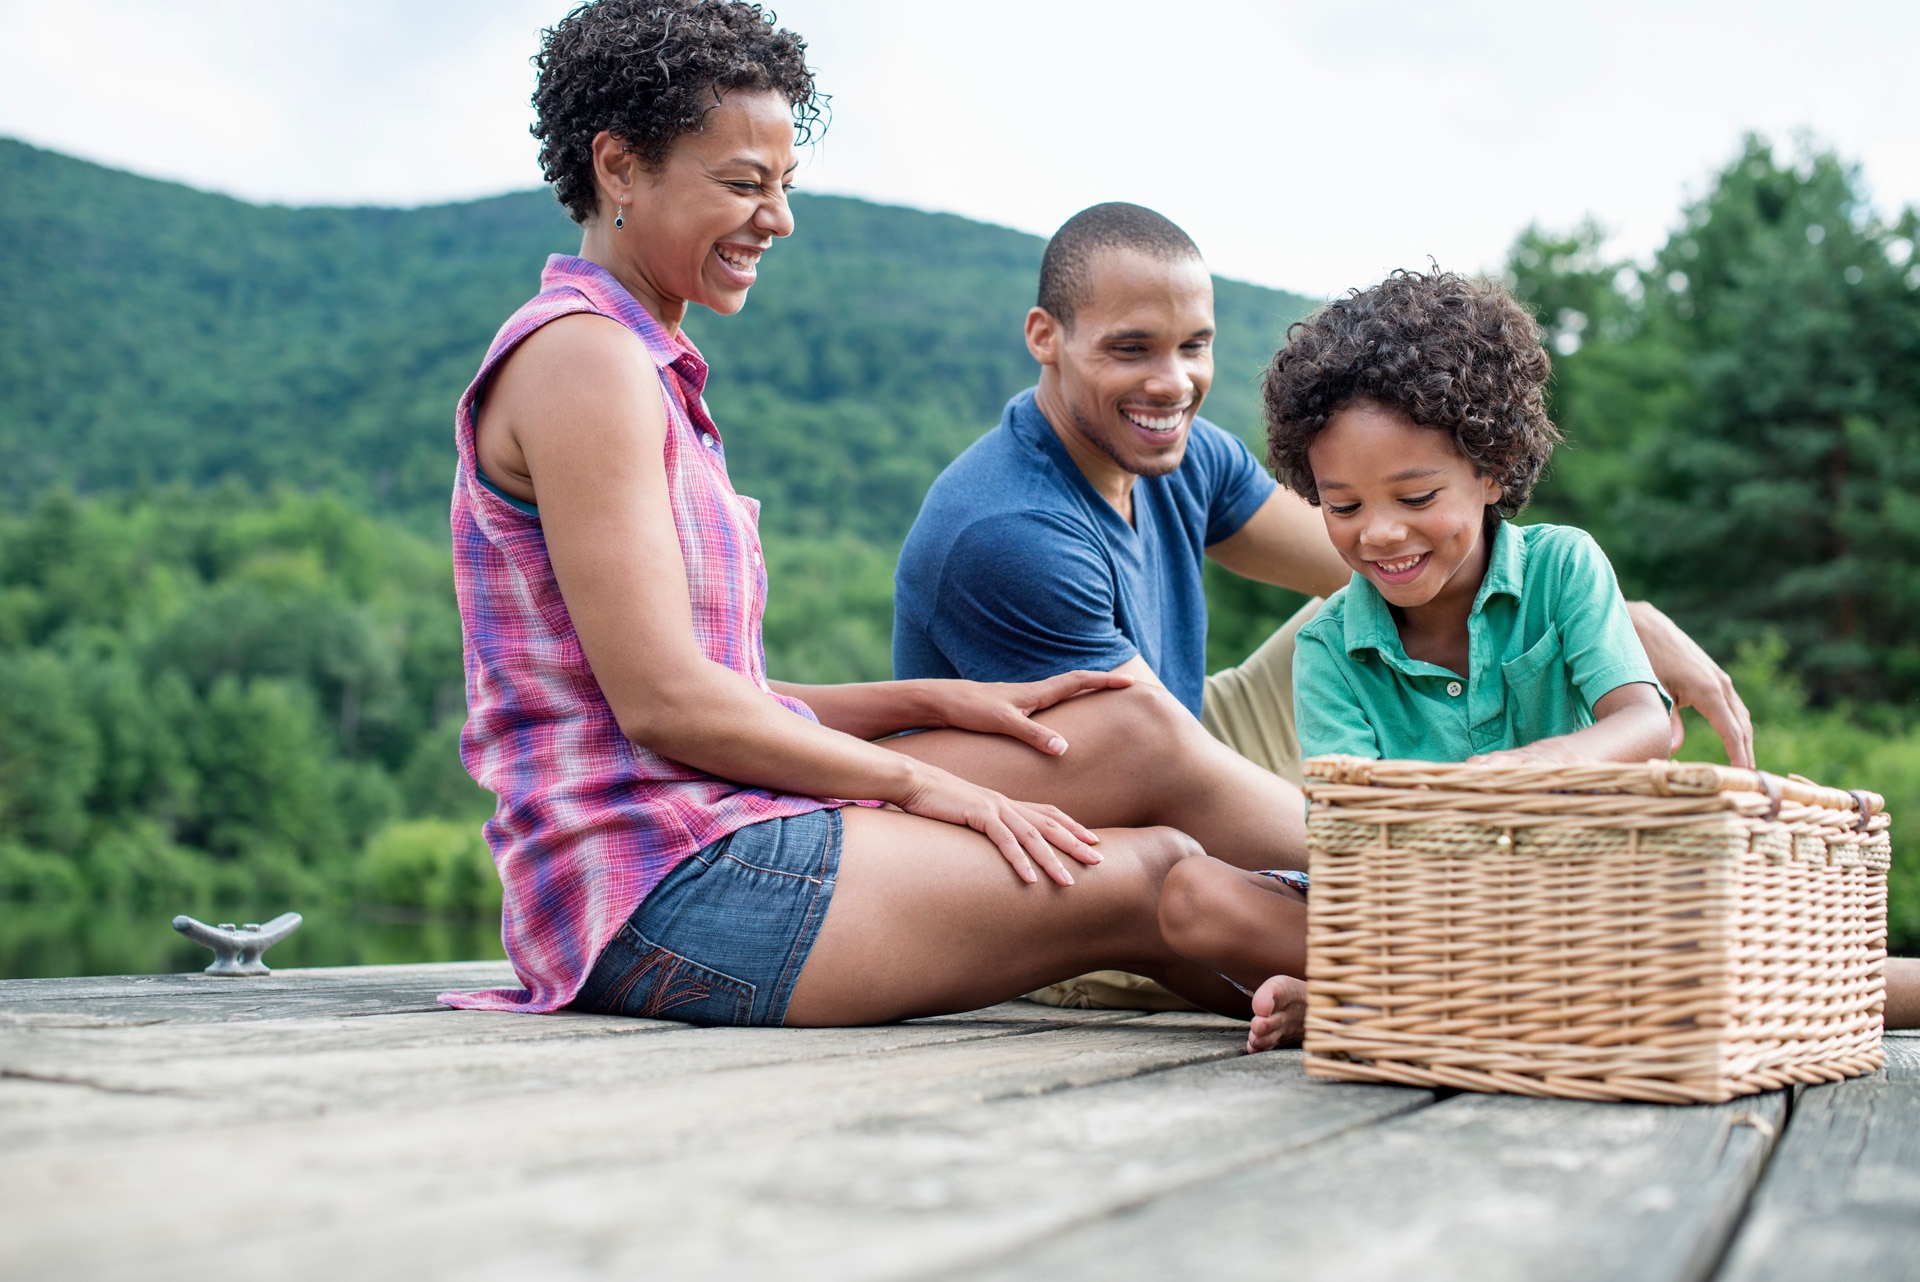 Háromtagú család nyári pikniken egy tó partján.